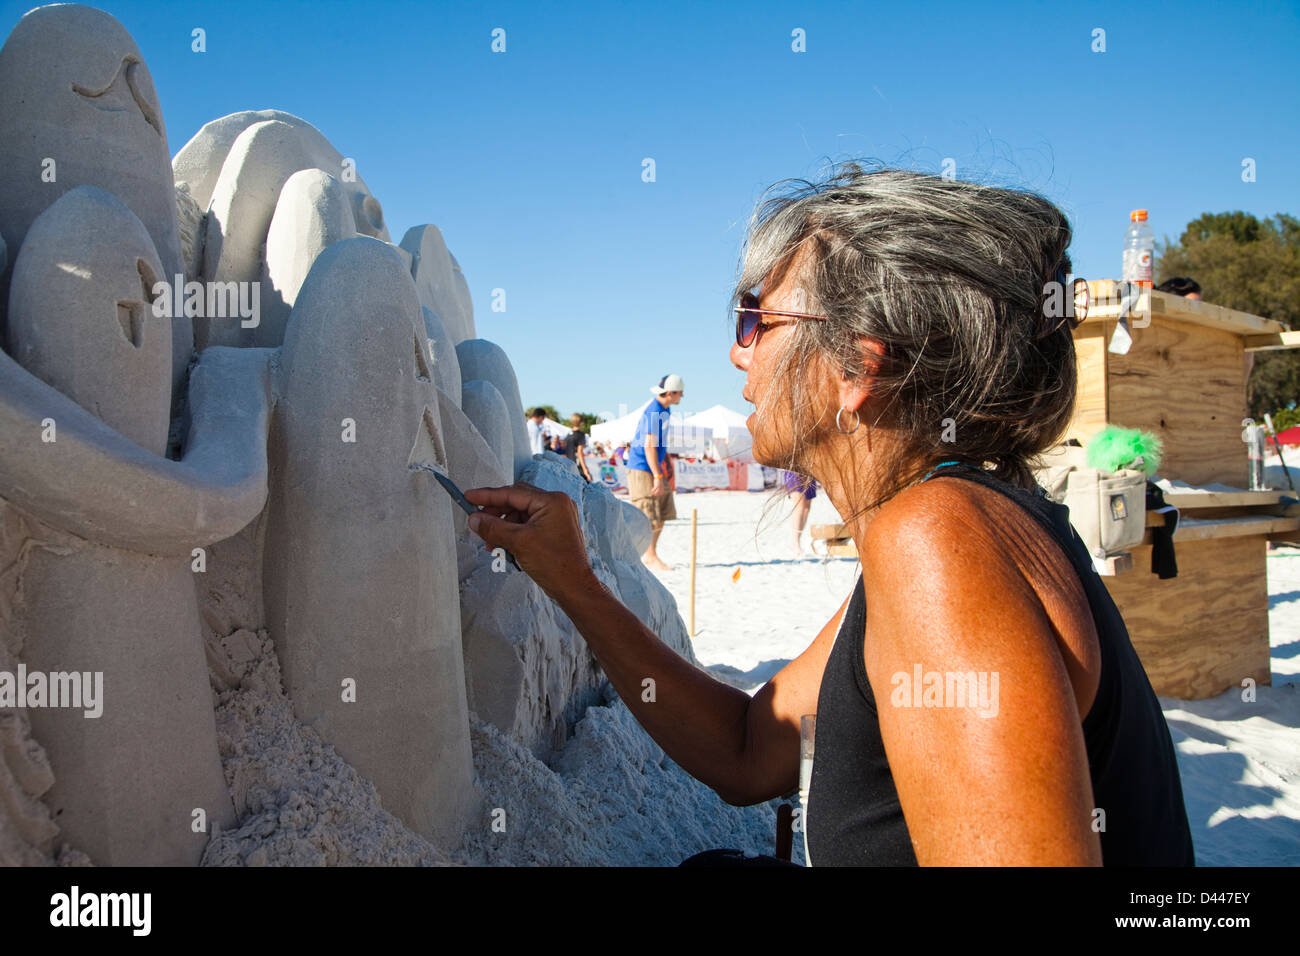 Ein professionelle Sand Bildhauer arbeitet am Strand während eines Wettkampfes in Siesta Key, FL. Stockfoto